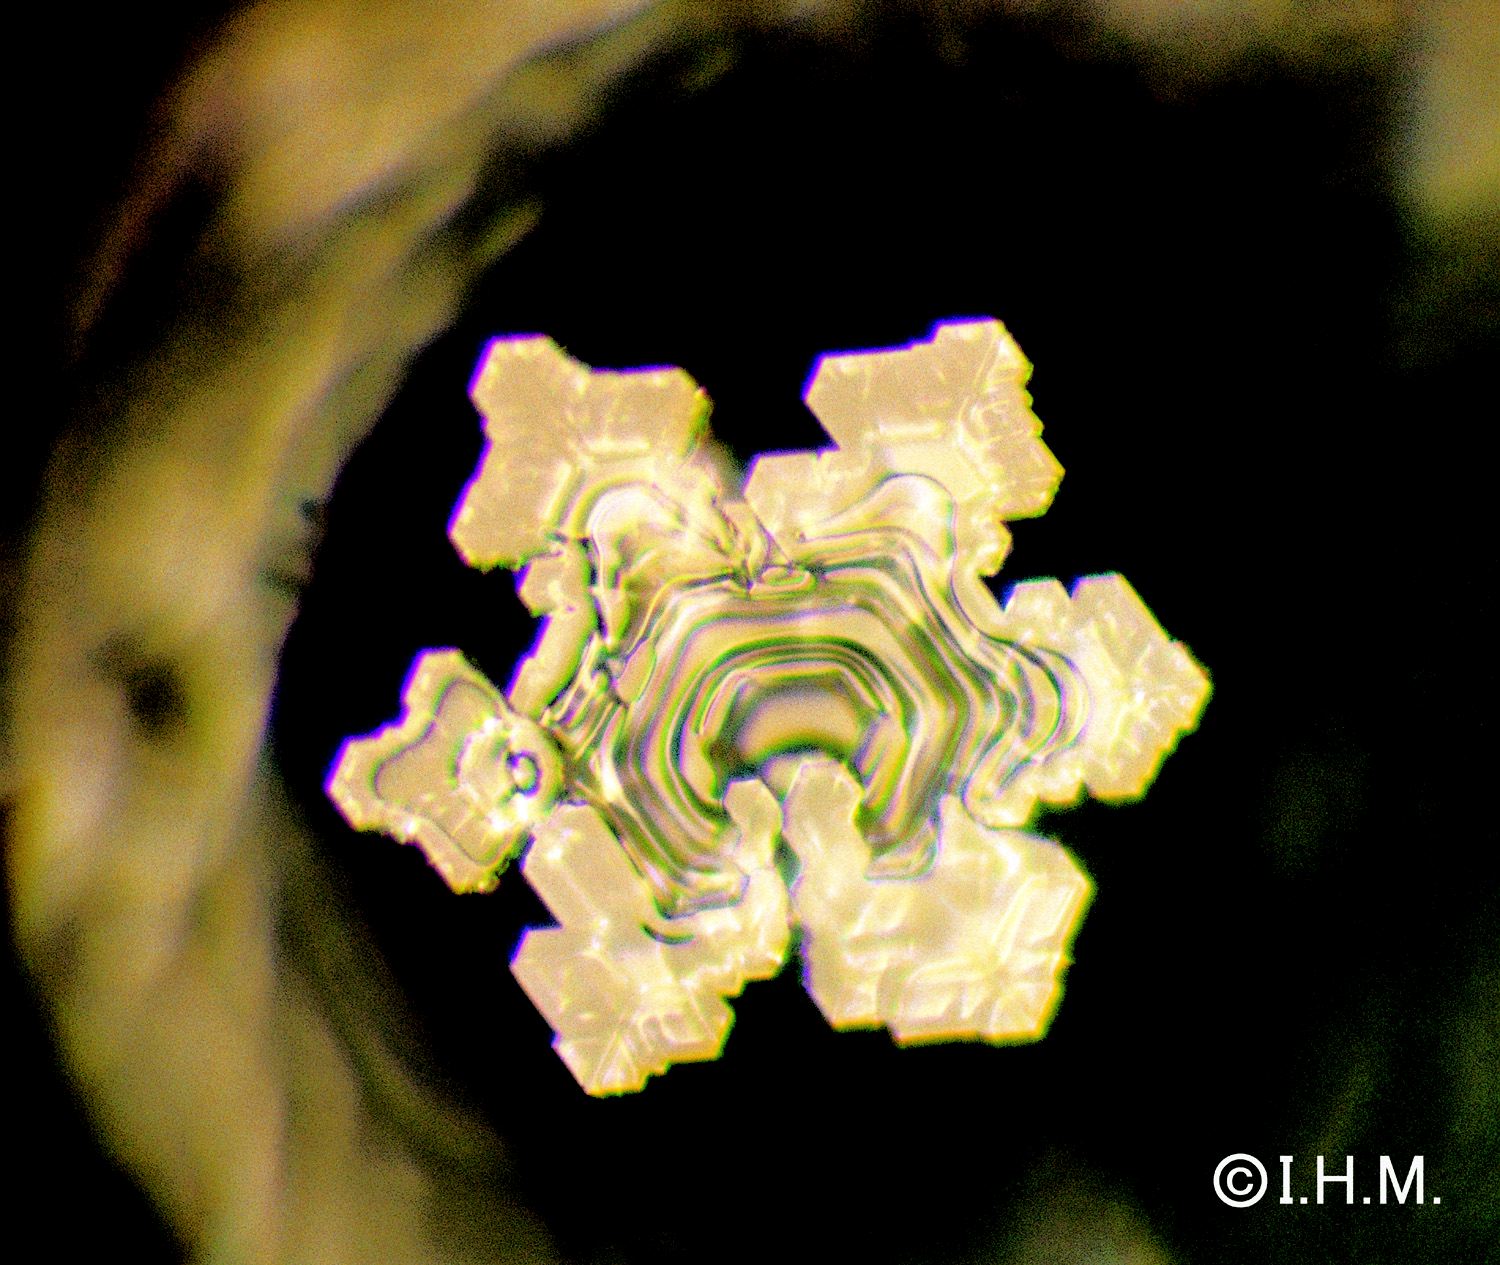 фотографии кристаллов воды